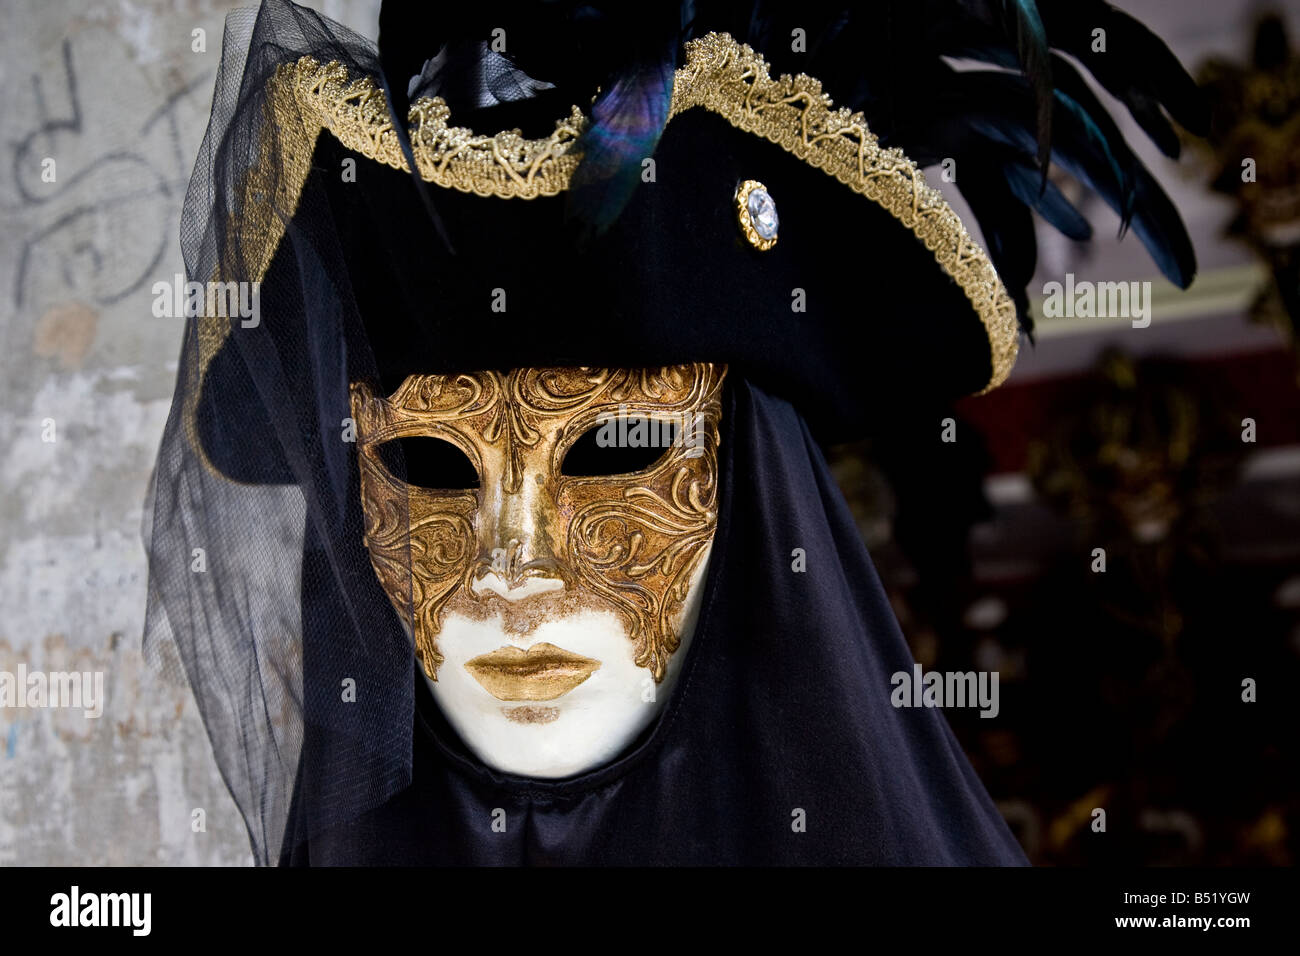 Typiquement vénitien masque noir et or avec voile et jolis détails Venise Vénétie Italie Europe EU Banque D'Images